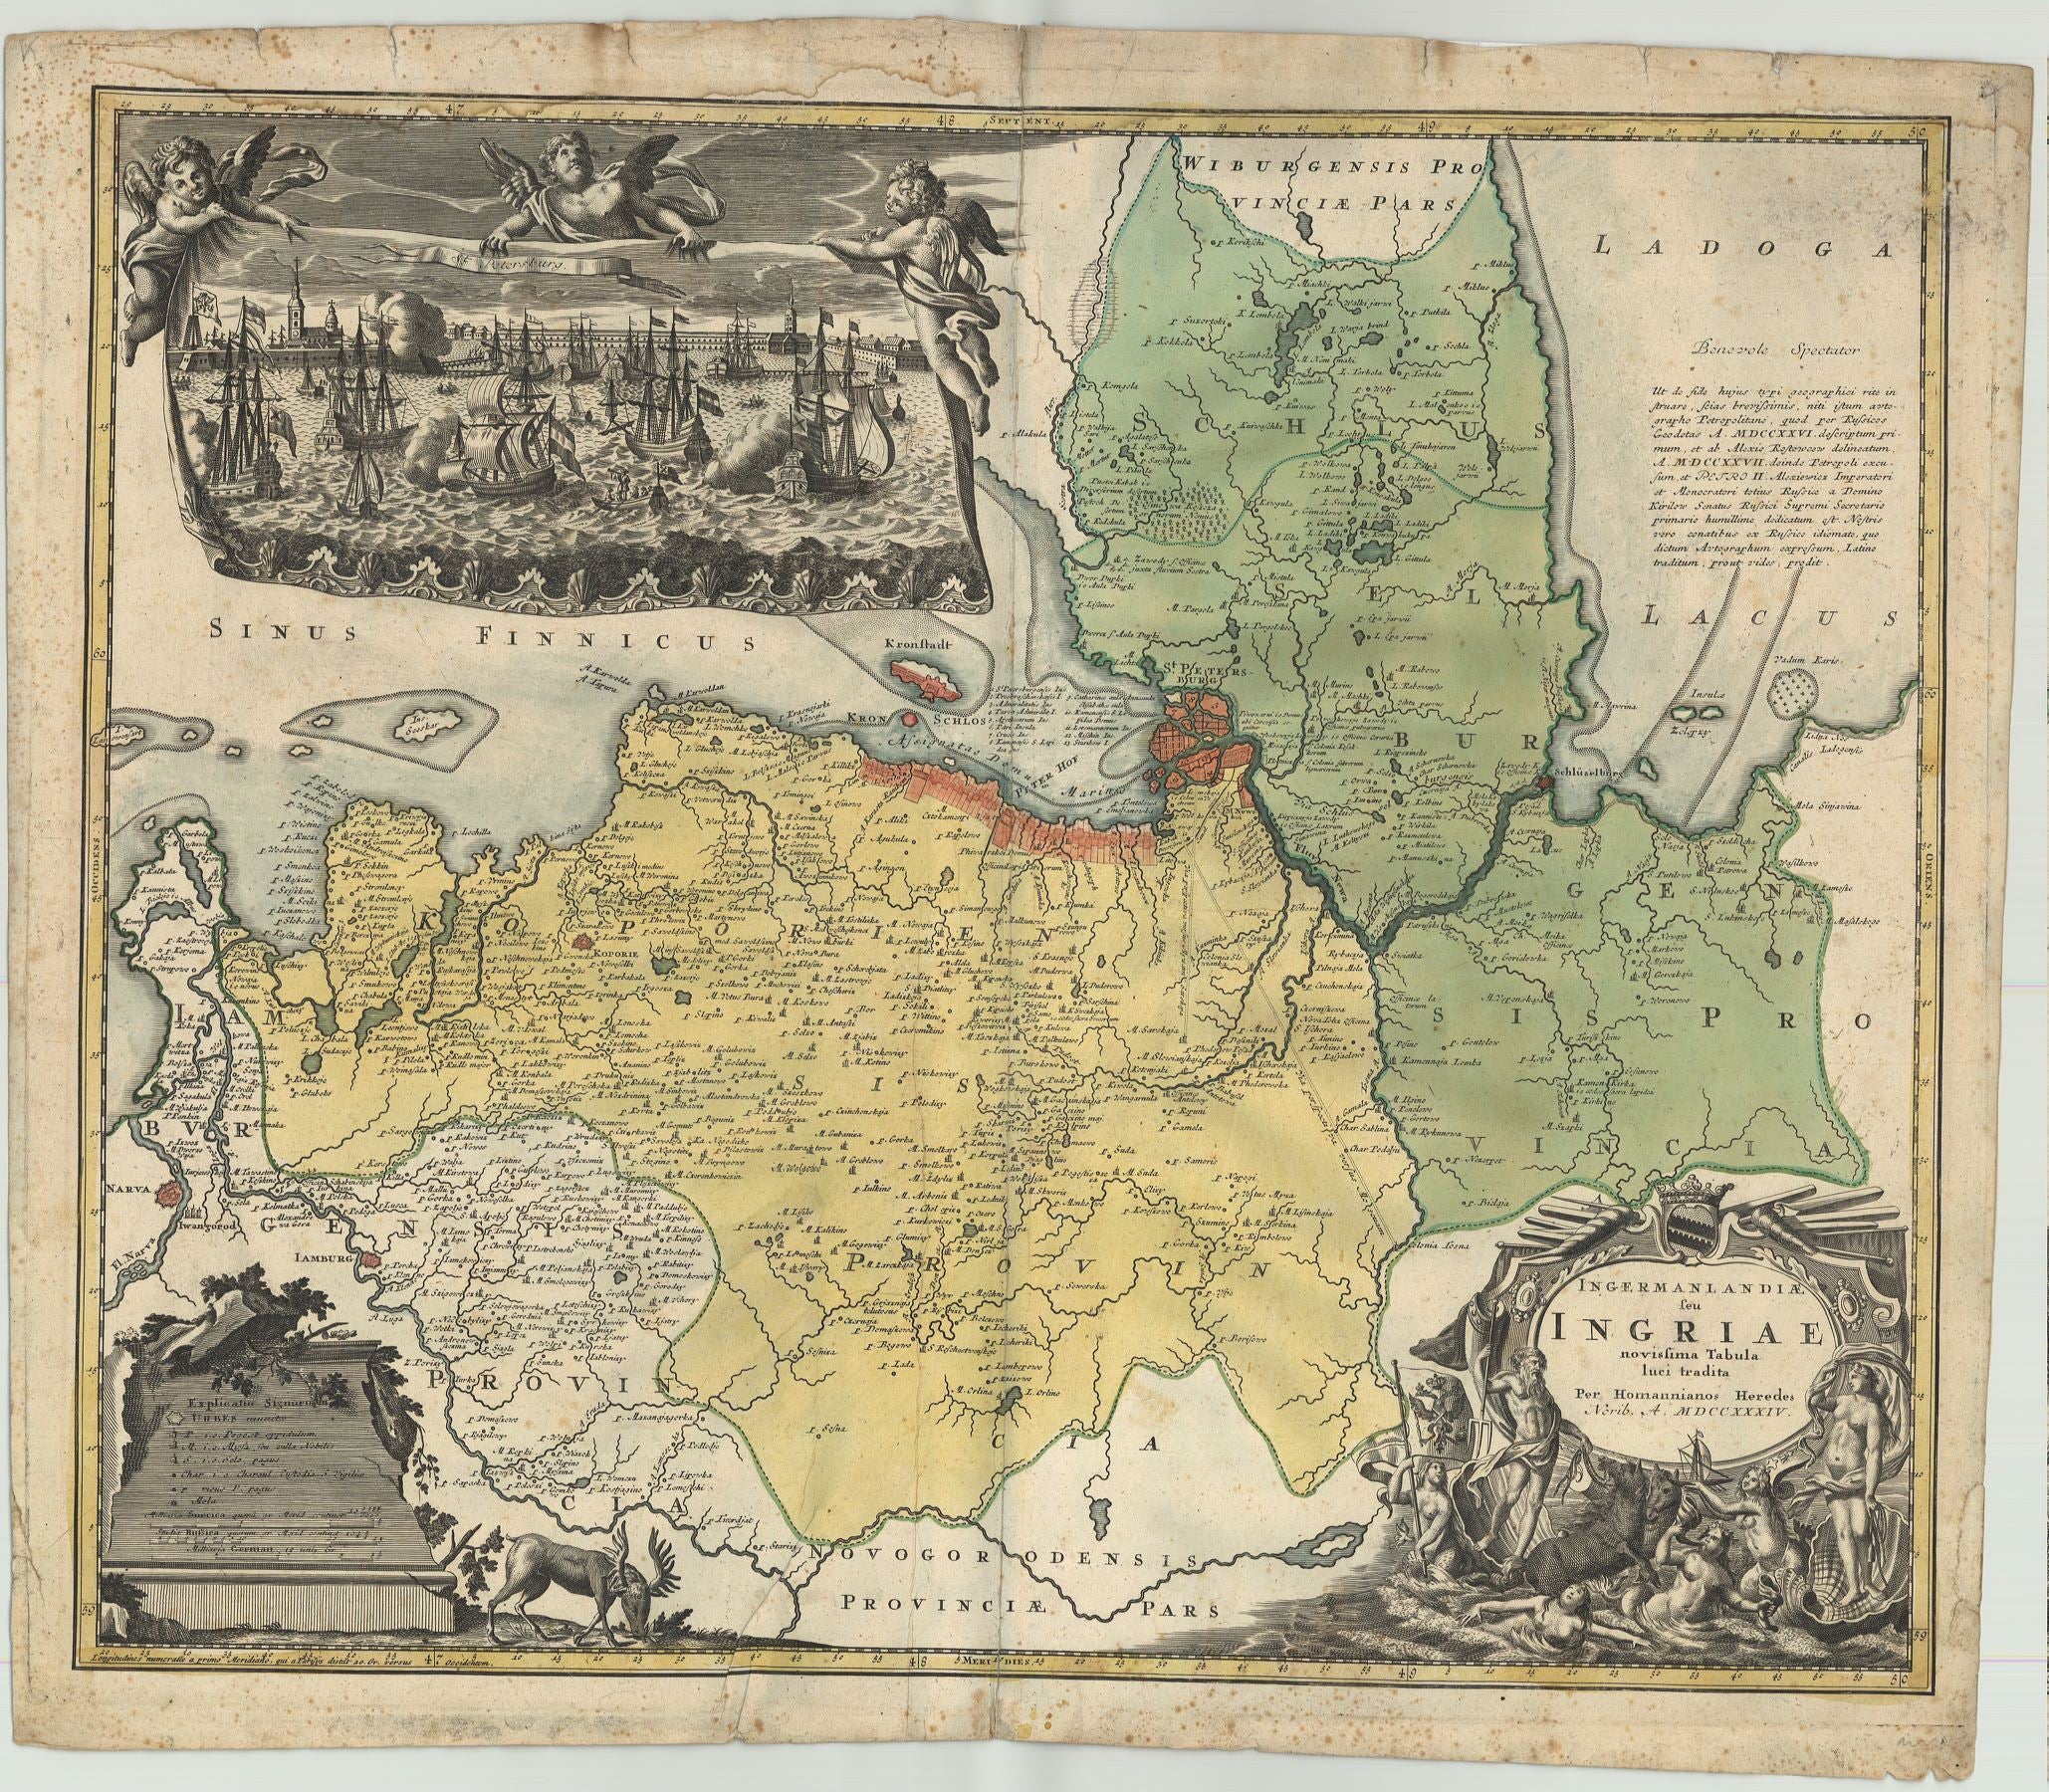 St. Petersburg im Jahr 1734 von Homann Erben